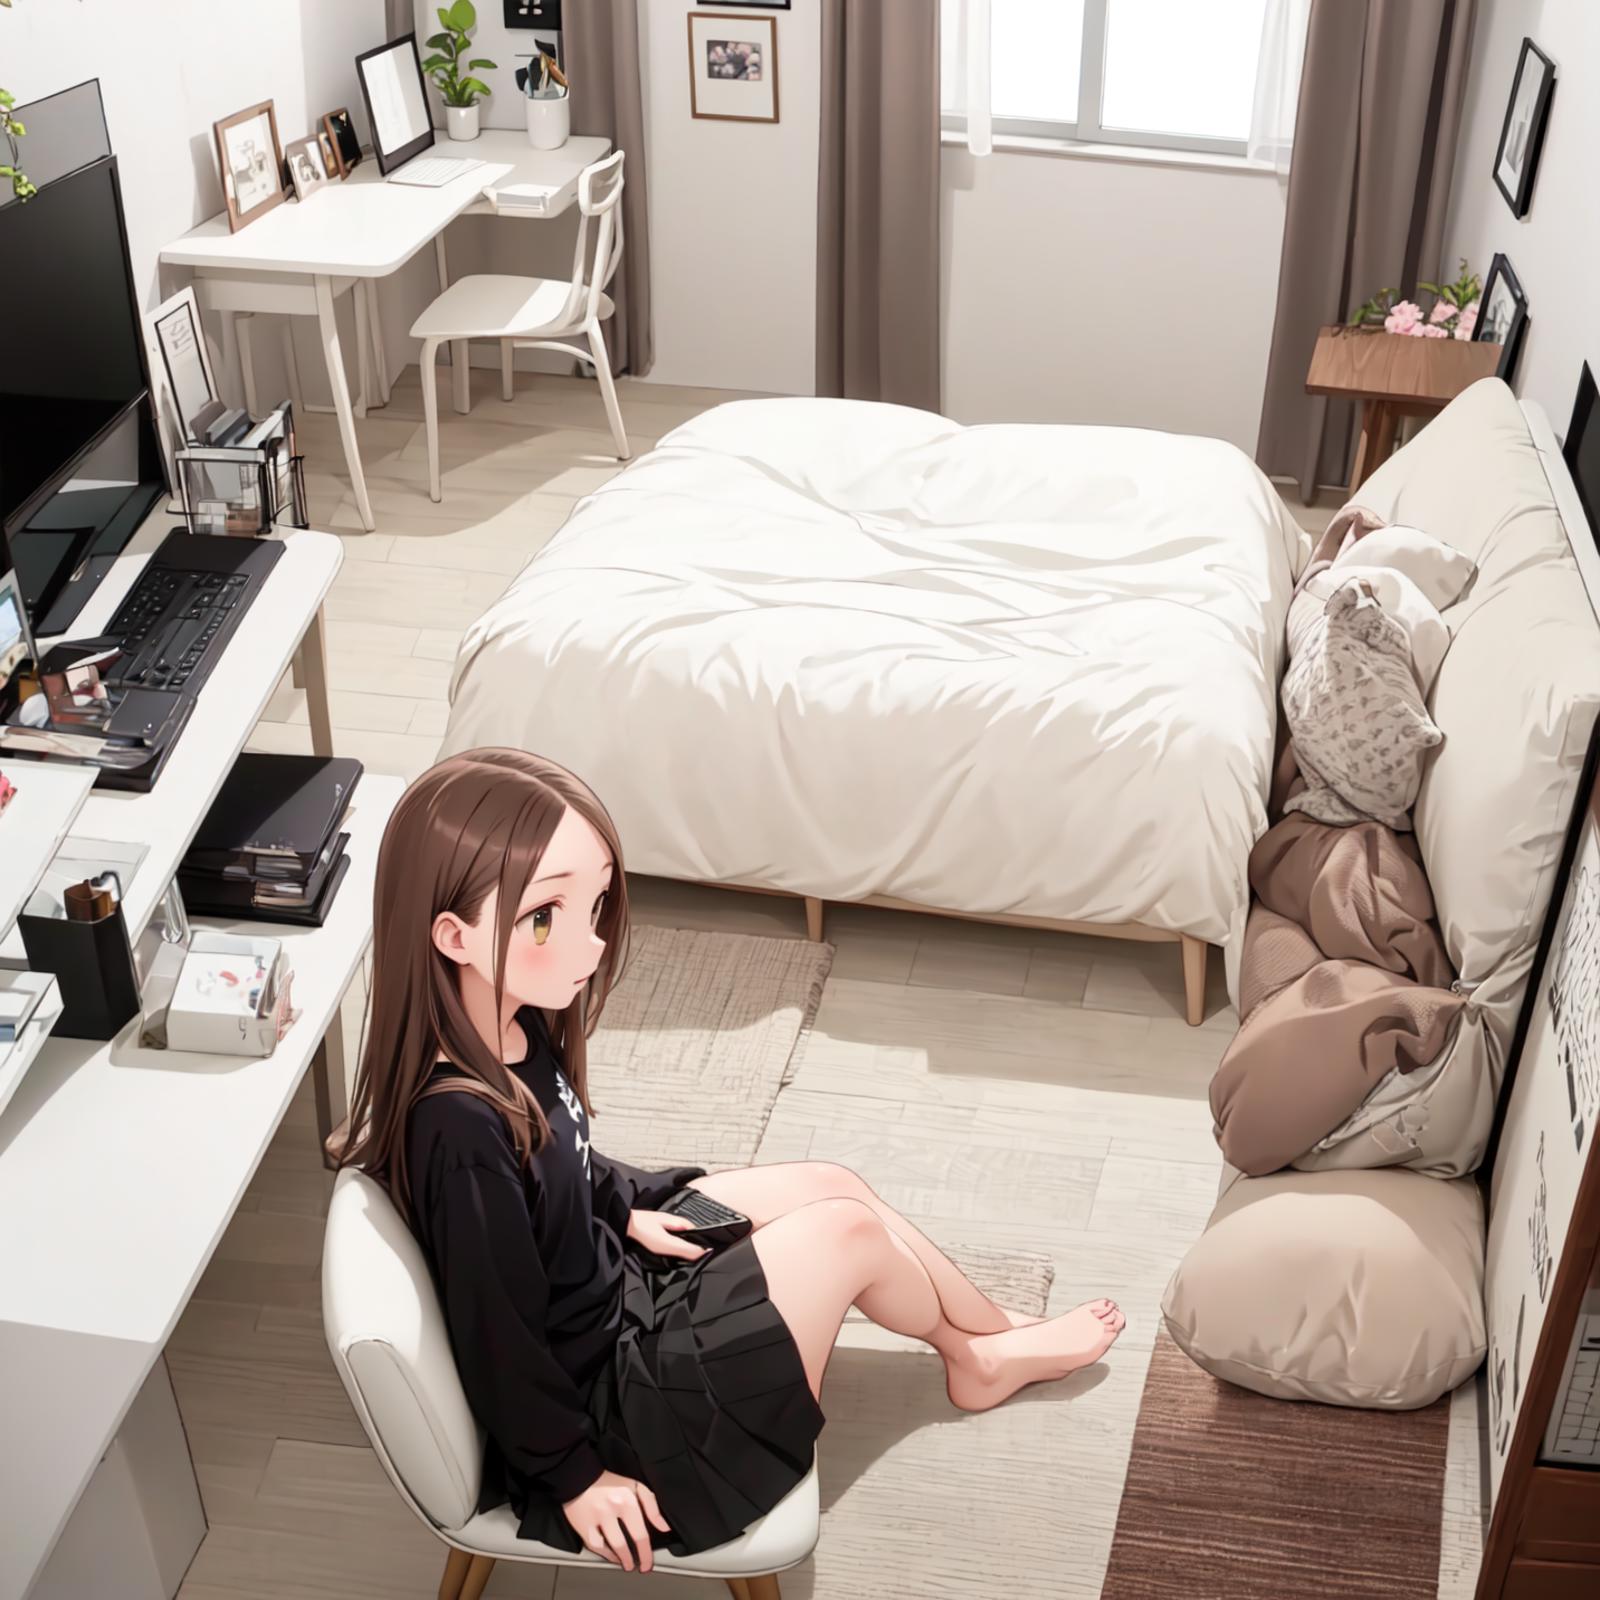 ひとり暮らしの女子の部屋 / Room of a girl living alone SD15 image by swingwings